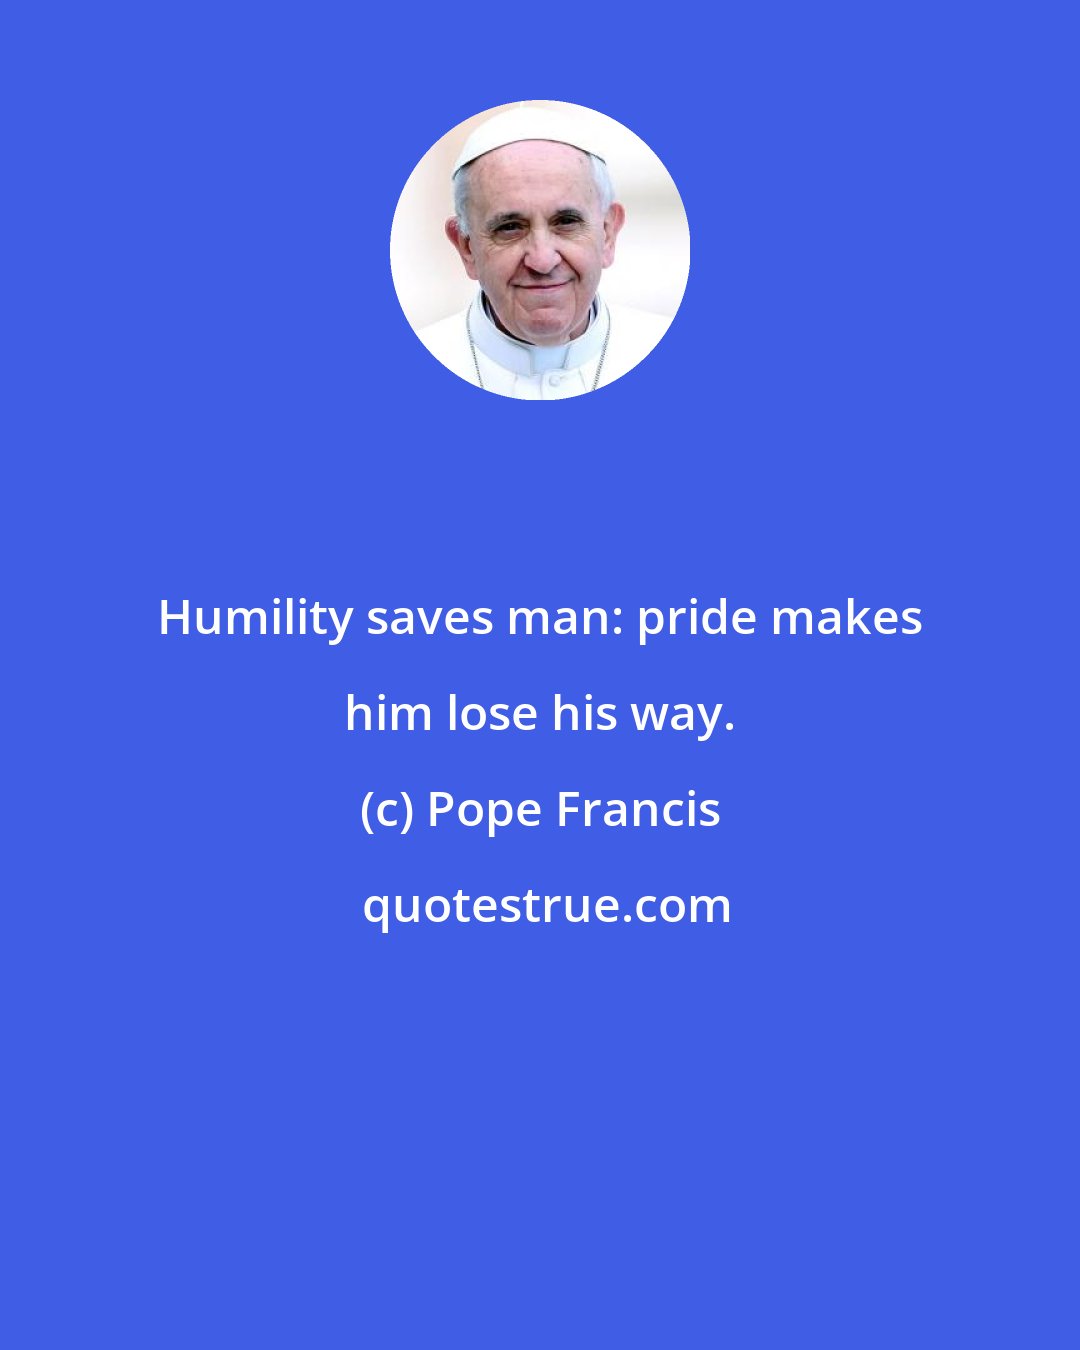 Pope Francis: Humility saves man: pride makes him lose his way.